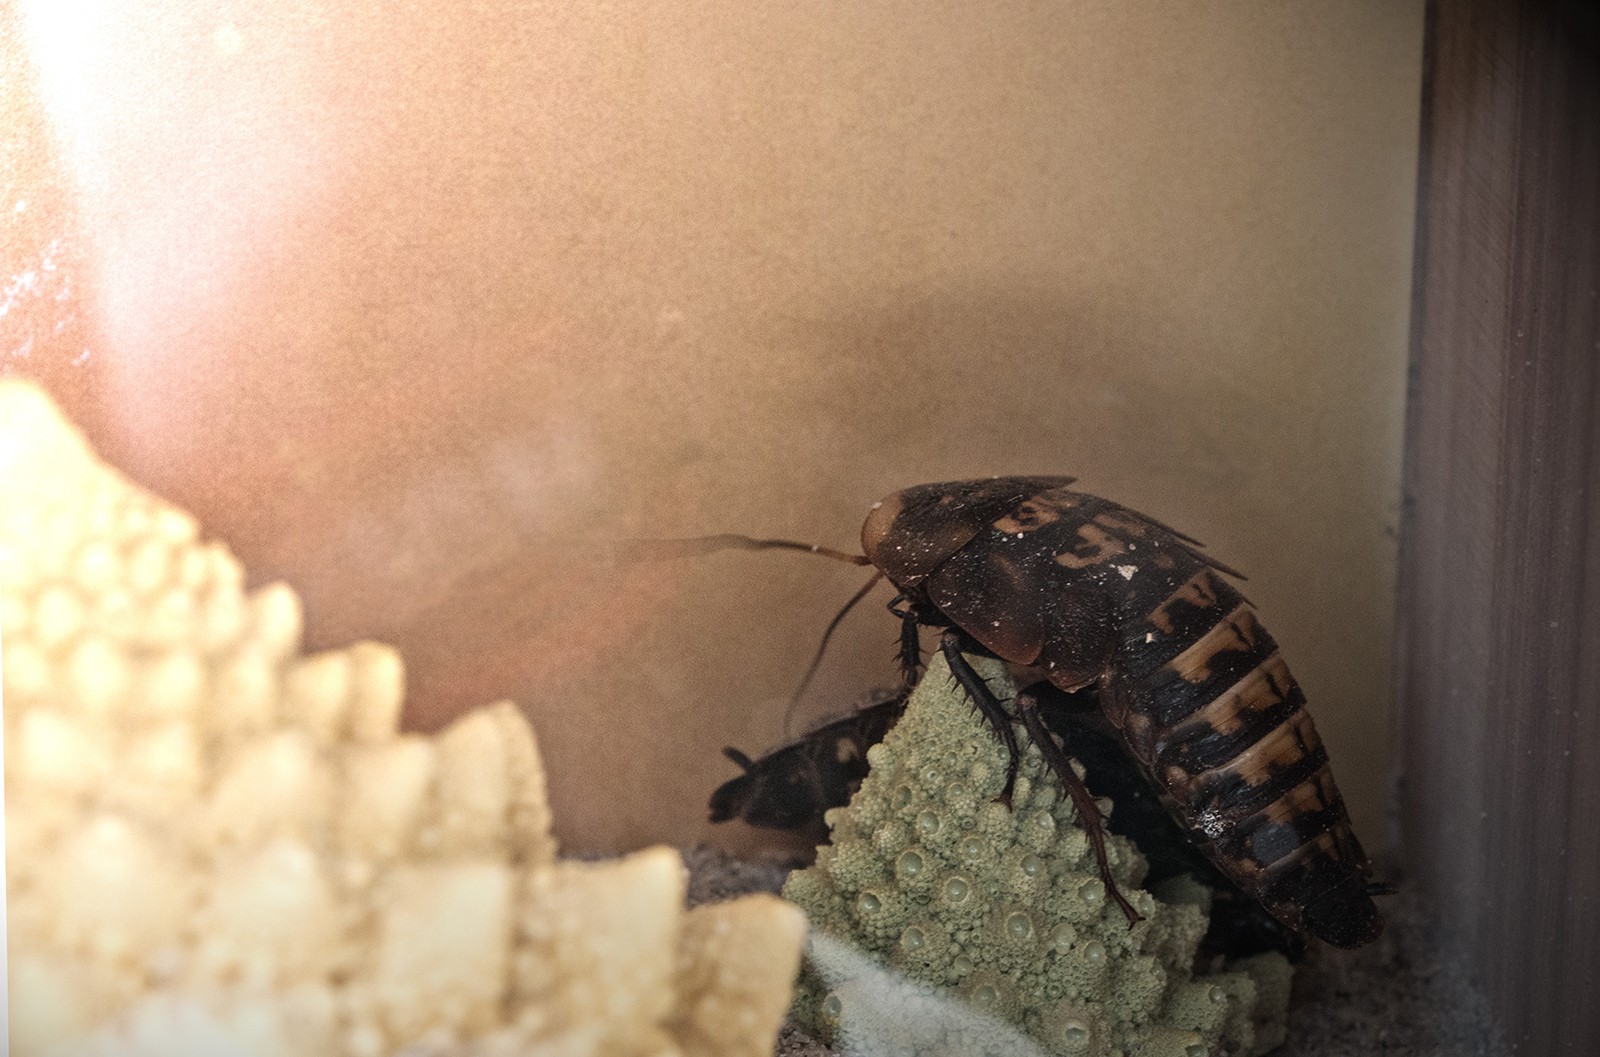 Biologisk og Syntetisk kunst med levende insekter</br>En dødningehovedkakerlak i MOTORs værk Night shortly.
<br />Rethinking MATTER - Biotic Synthetic på Godsbanen</br>Foto: Mariana Gil